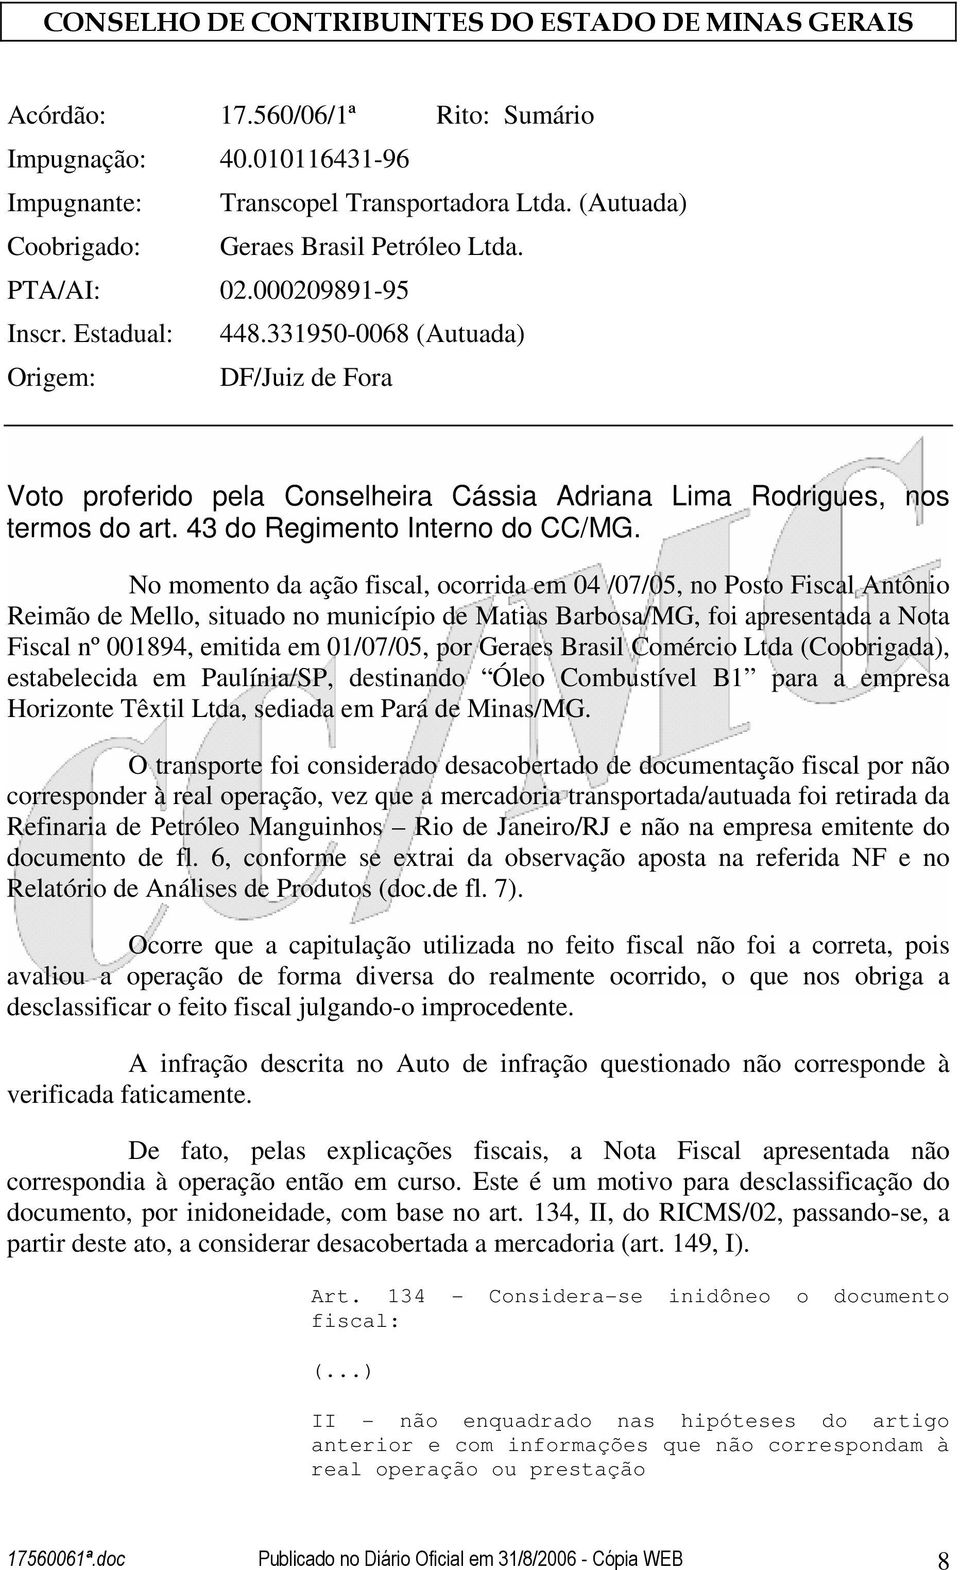 No momento da ação fiscal, ocorrida em 04 /07/05, no Posto Fiscal Antônio Reimão de Mello, situado no município de Matias Barbosa/MG, foi apresentada a Nota Fiscal nº 001894, emitida em 01/07/05, por